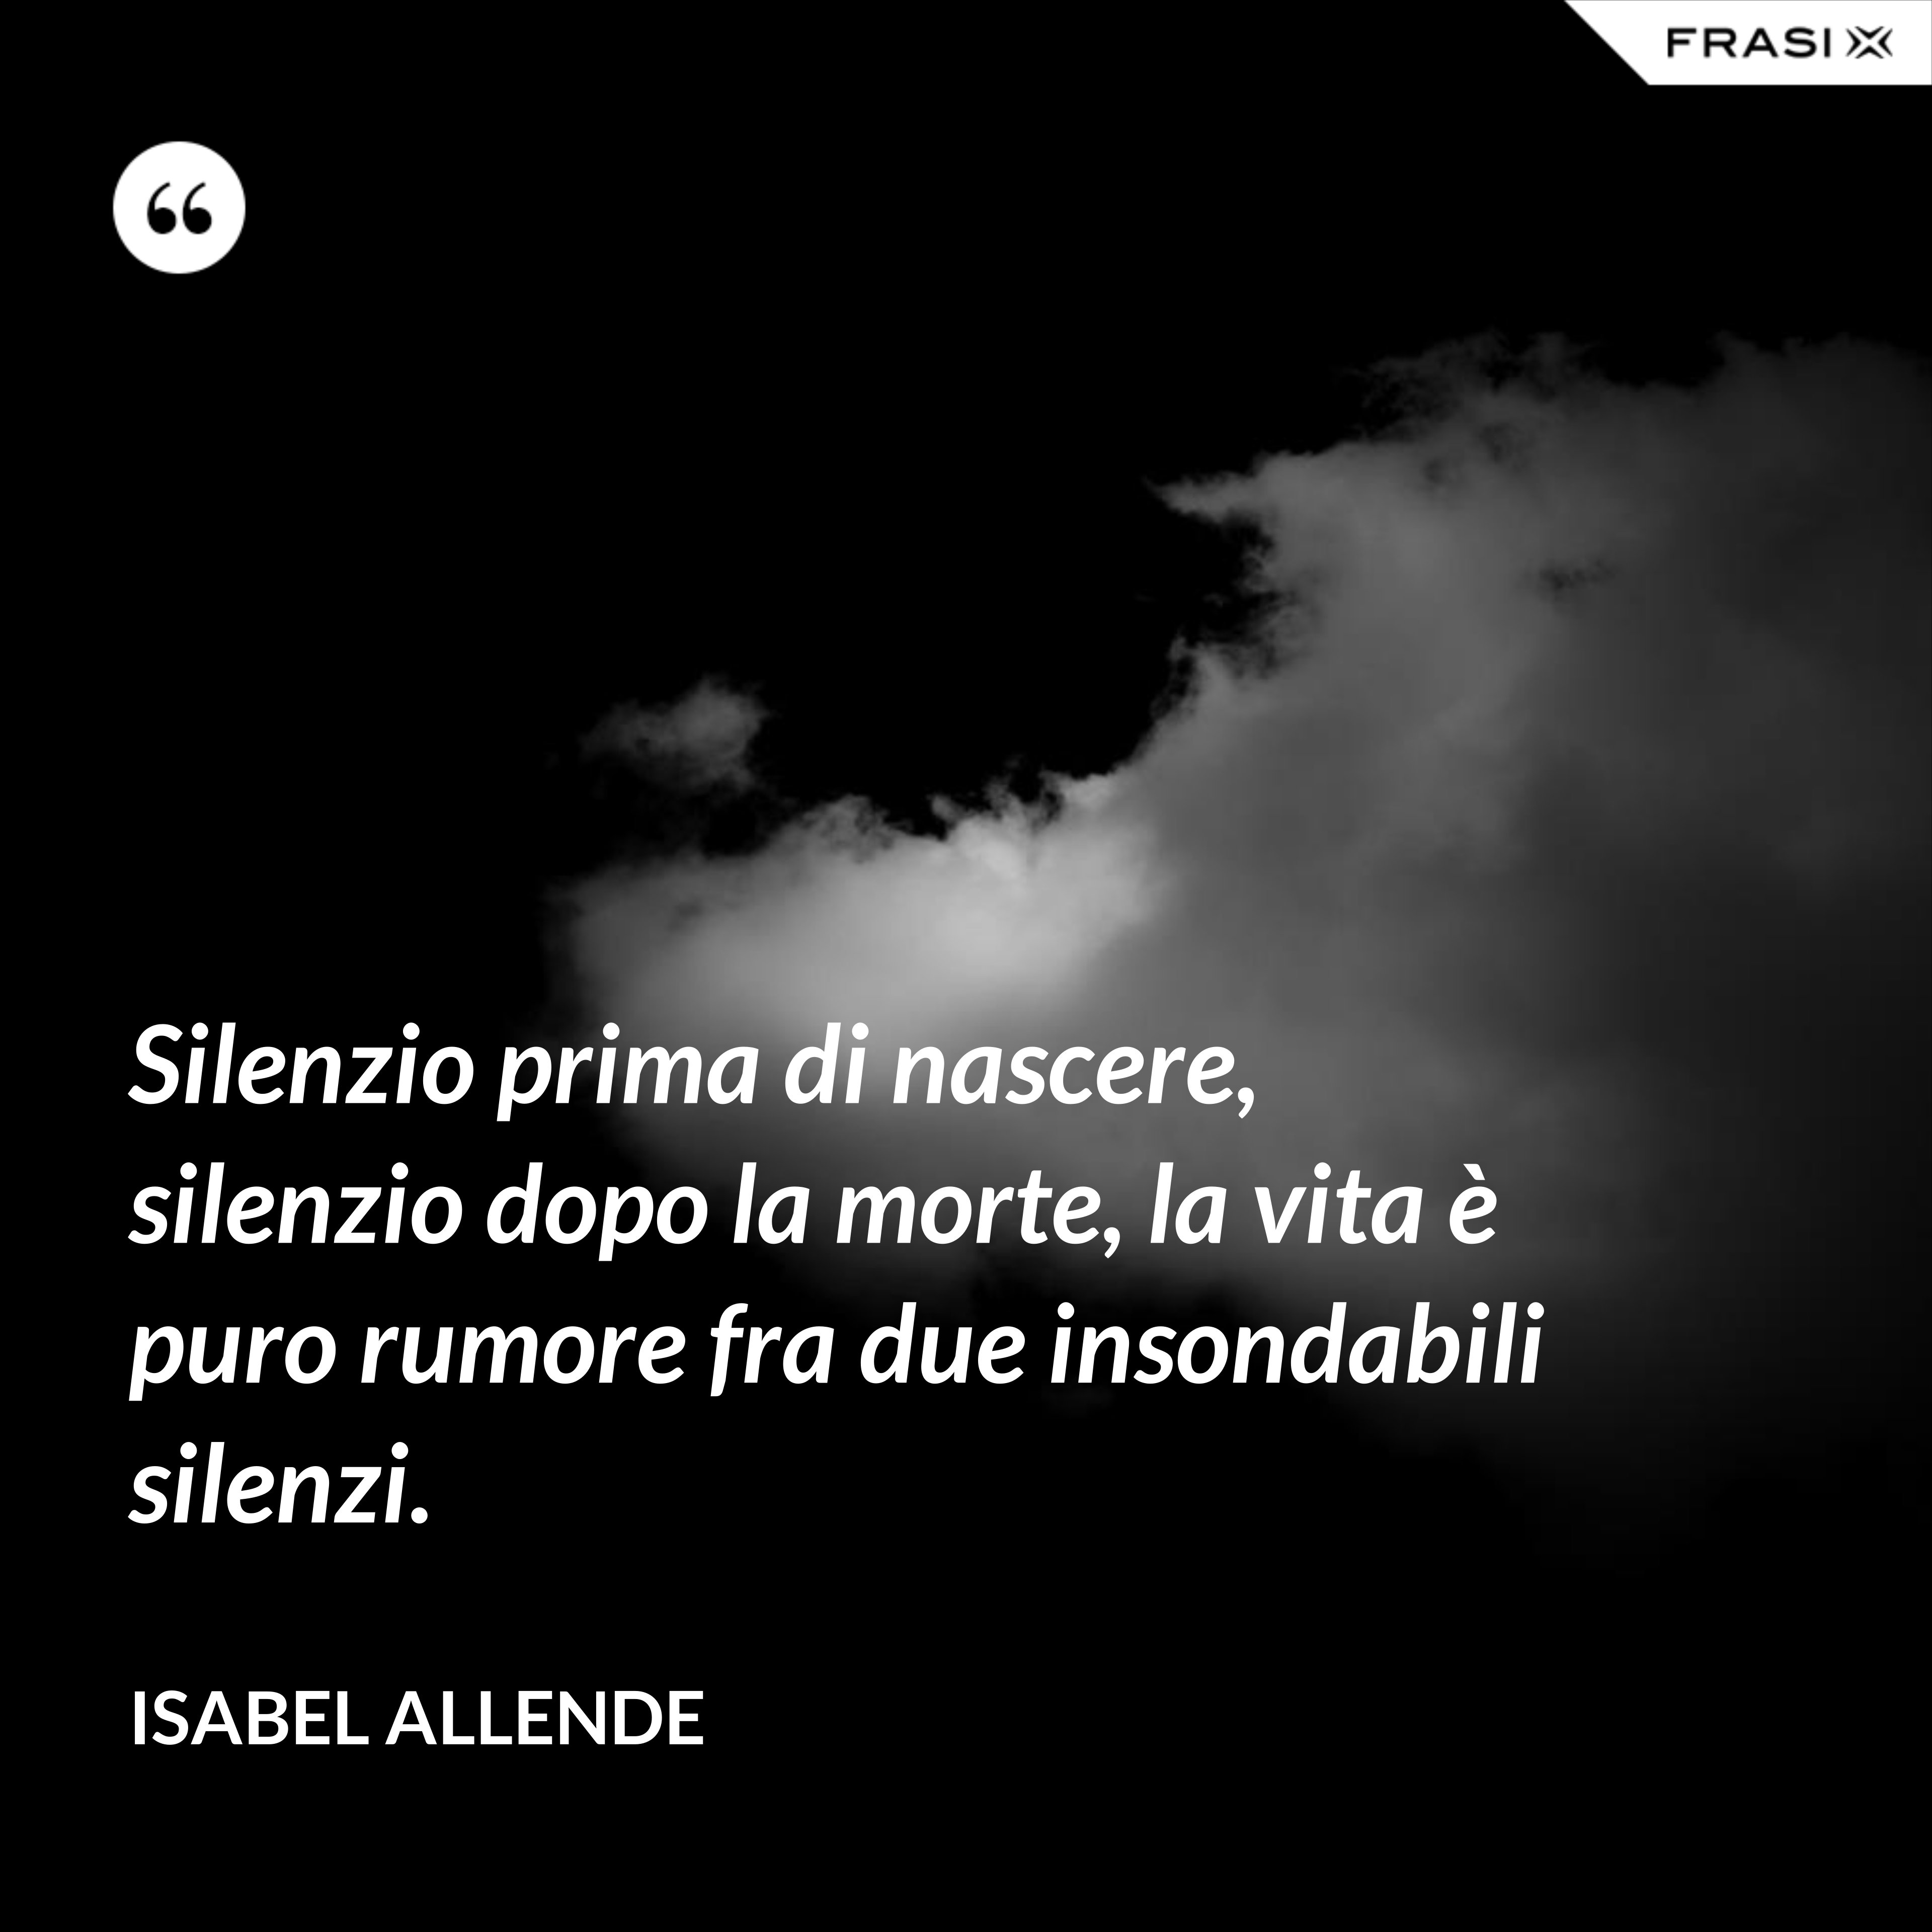 Silenzio prima di nascere, silenzio dopo la morte, la vita è puro rumore fra due insondabili silenzi. - Isabel Allende